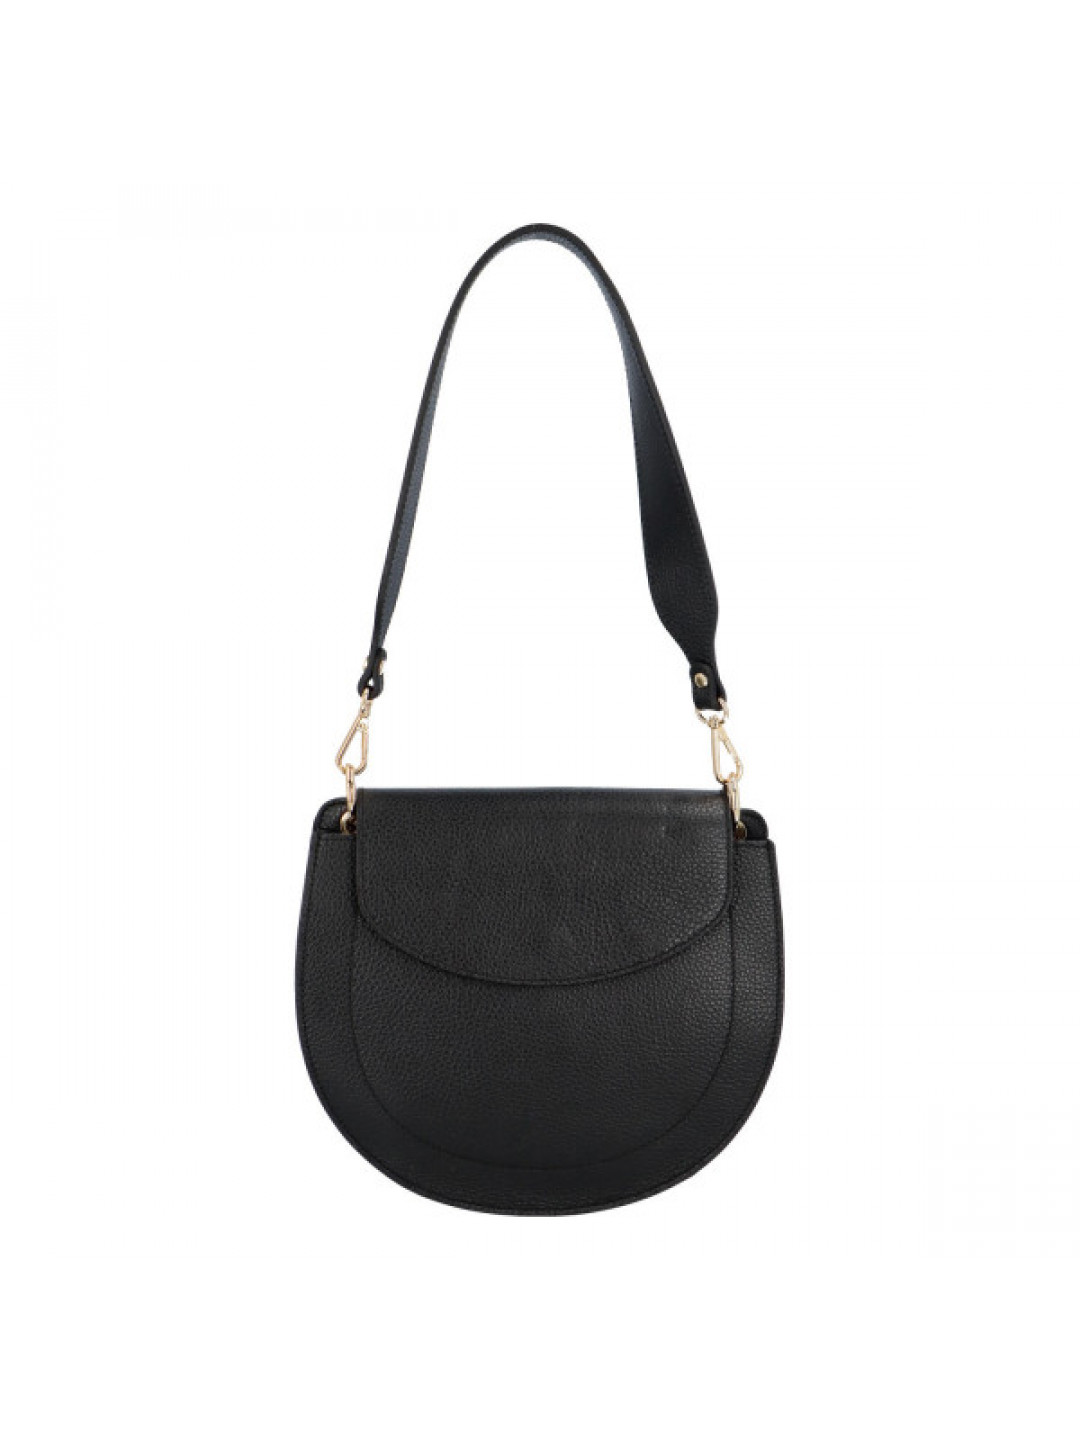 Dámská kožená kabelka přes rameno černá – ItalY Amanda